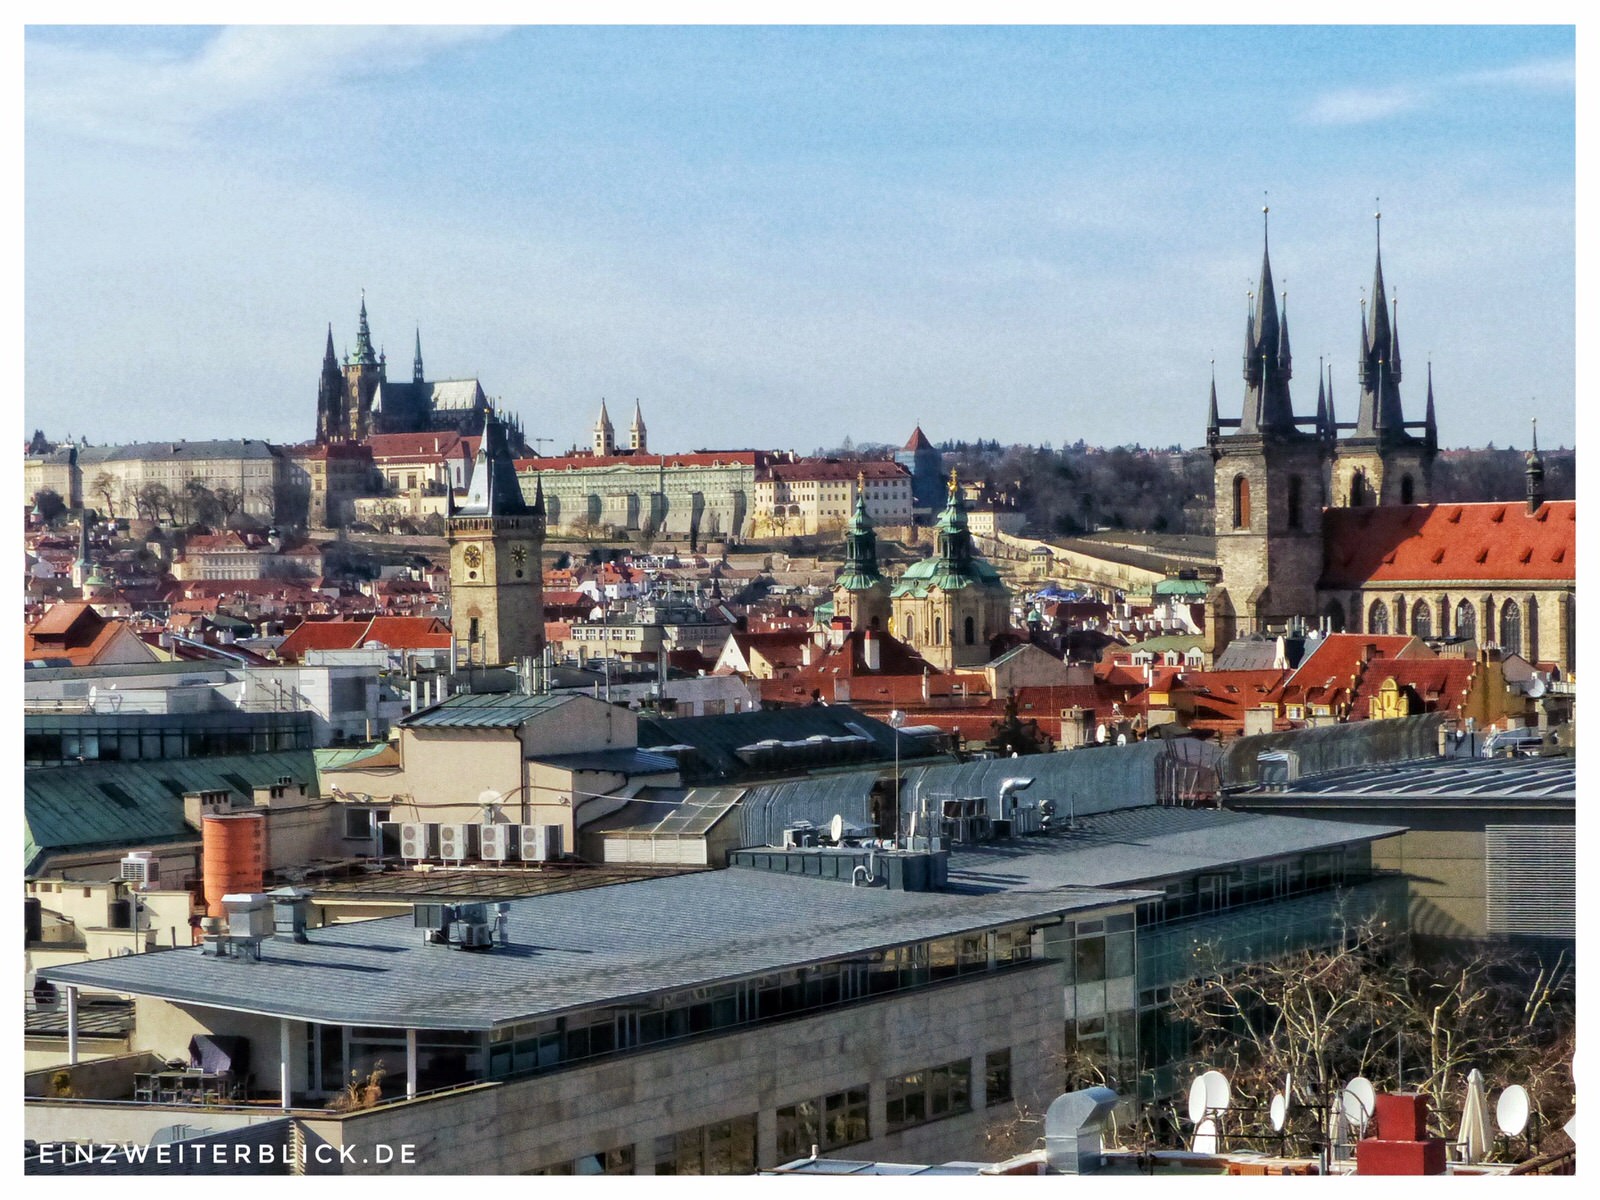 Meine Tipps für ein verlängertes Wochenende in Prag